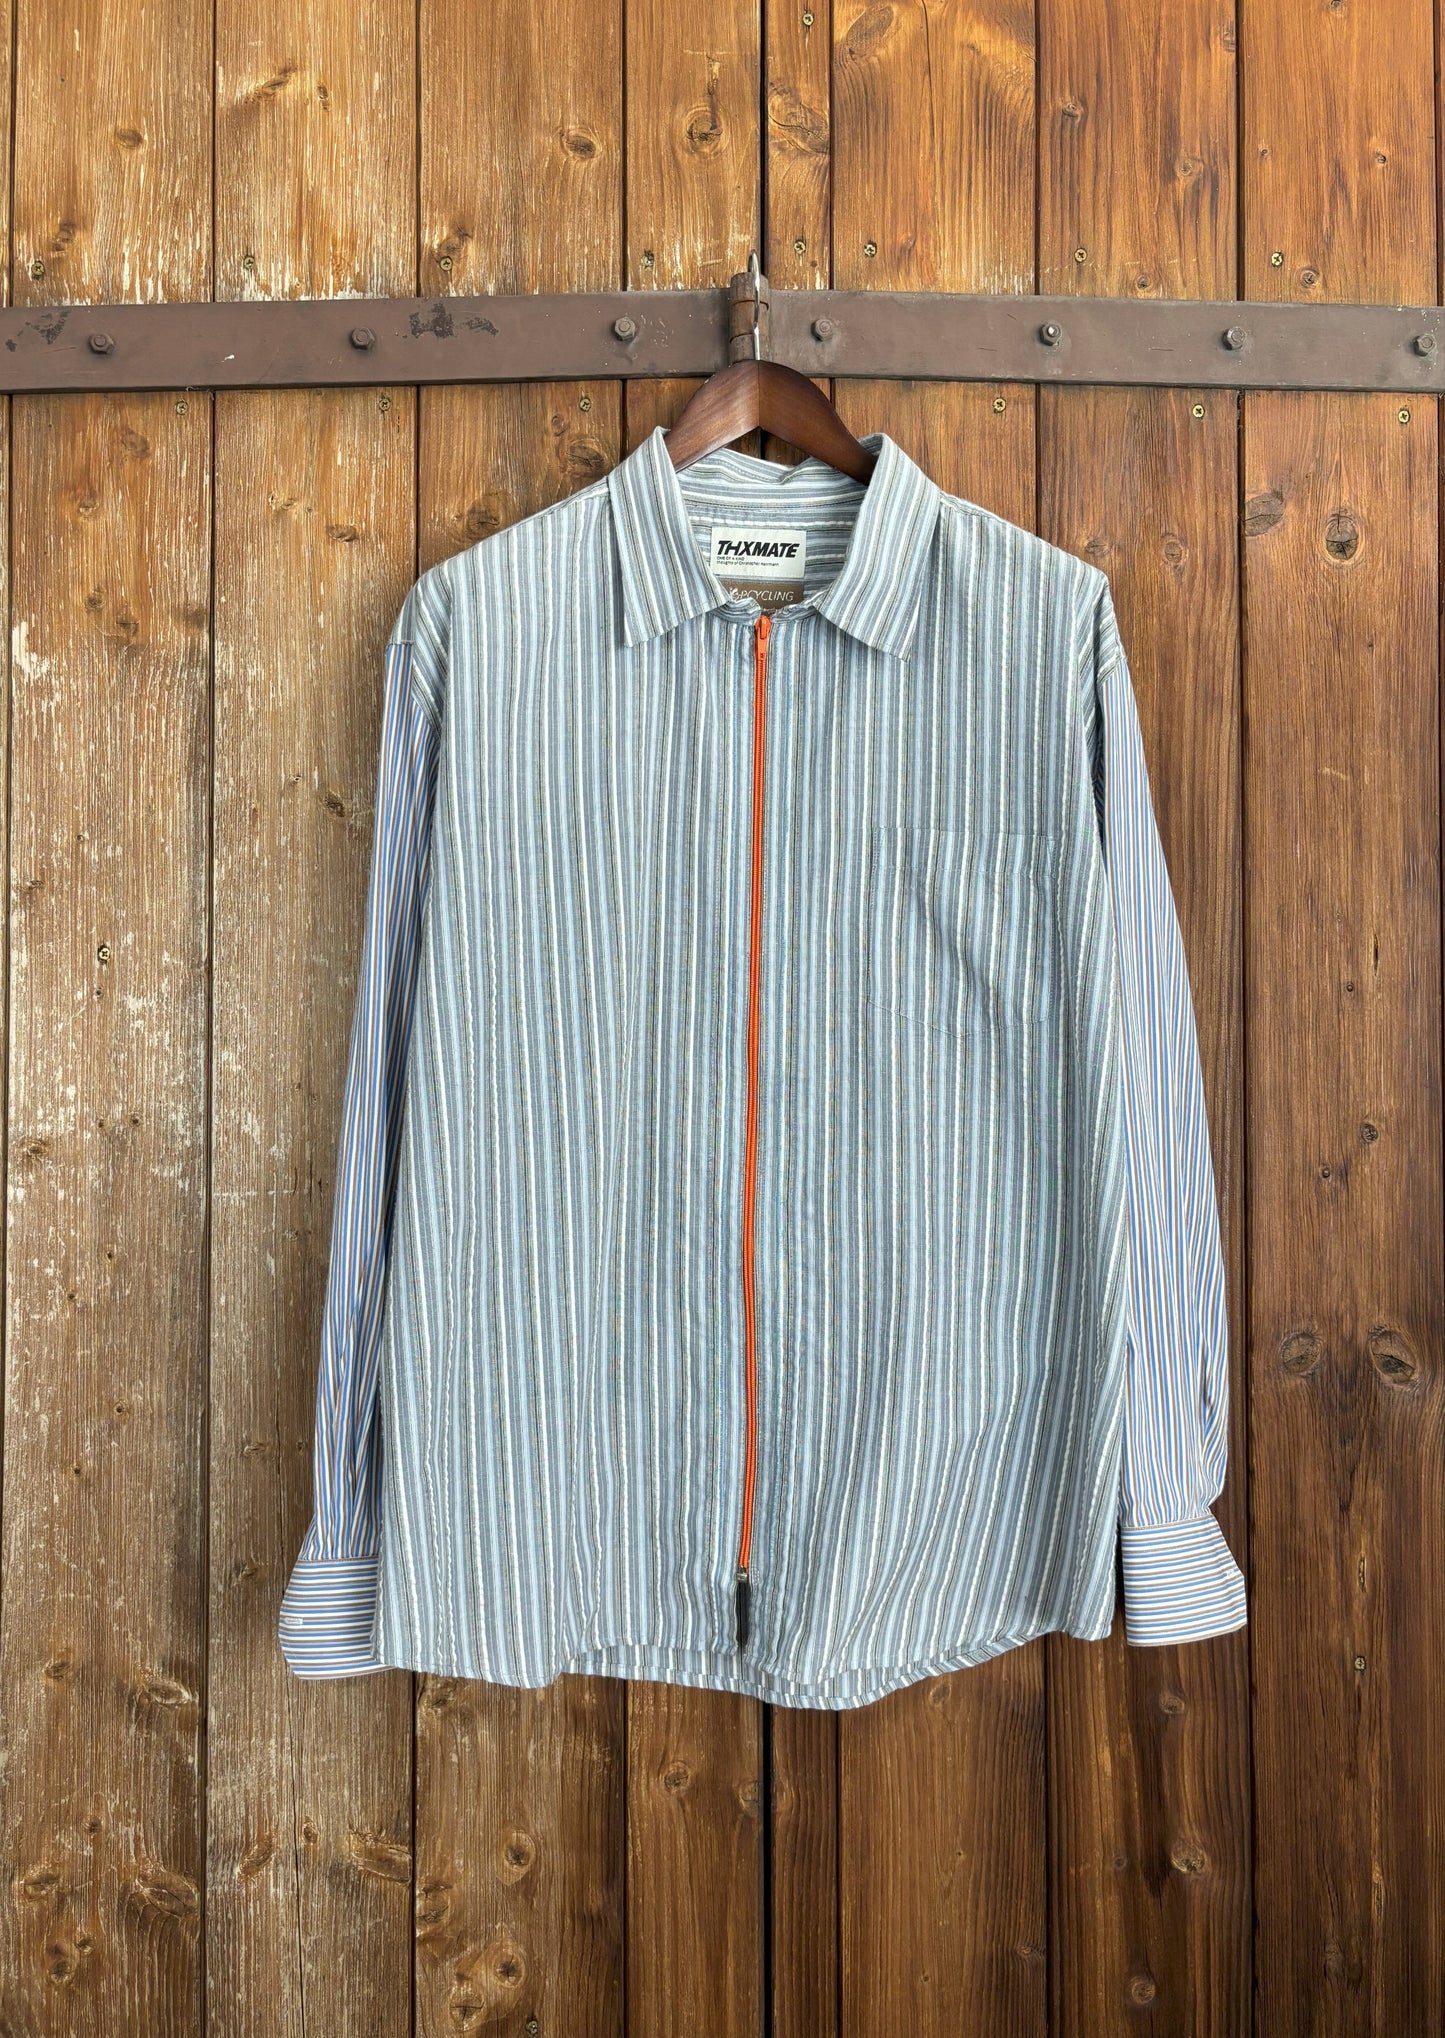 Ein hochwertiges hellblau-weiß gestreiftes Seersucker-Hemd mit einem orangefarbenen Reißverschluss anstelle einer Knopfleiste. Die Ärmel wurden ausgetauscht mit einem anderen gestreiften, hellblauen Hemd. Mit Kentkragen und Brusttasche.